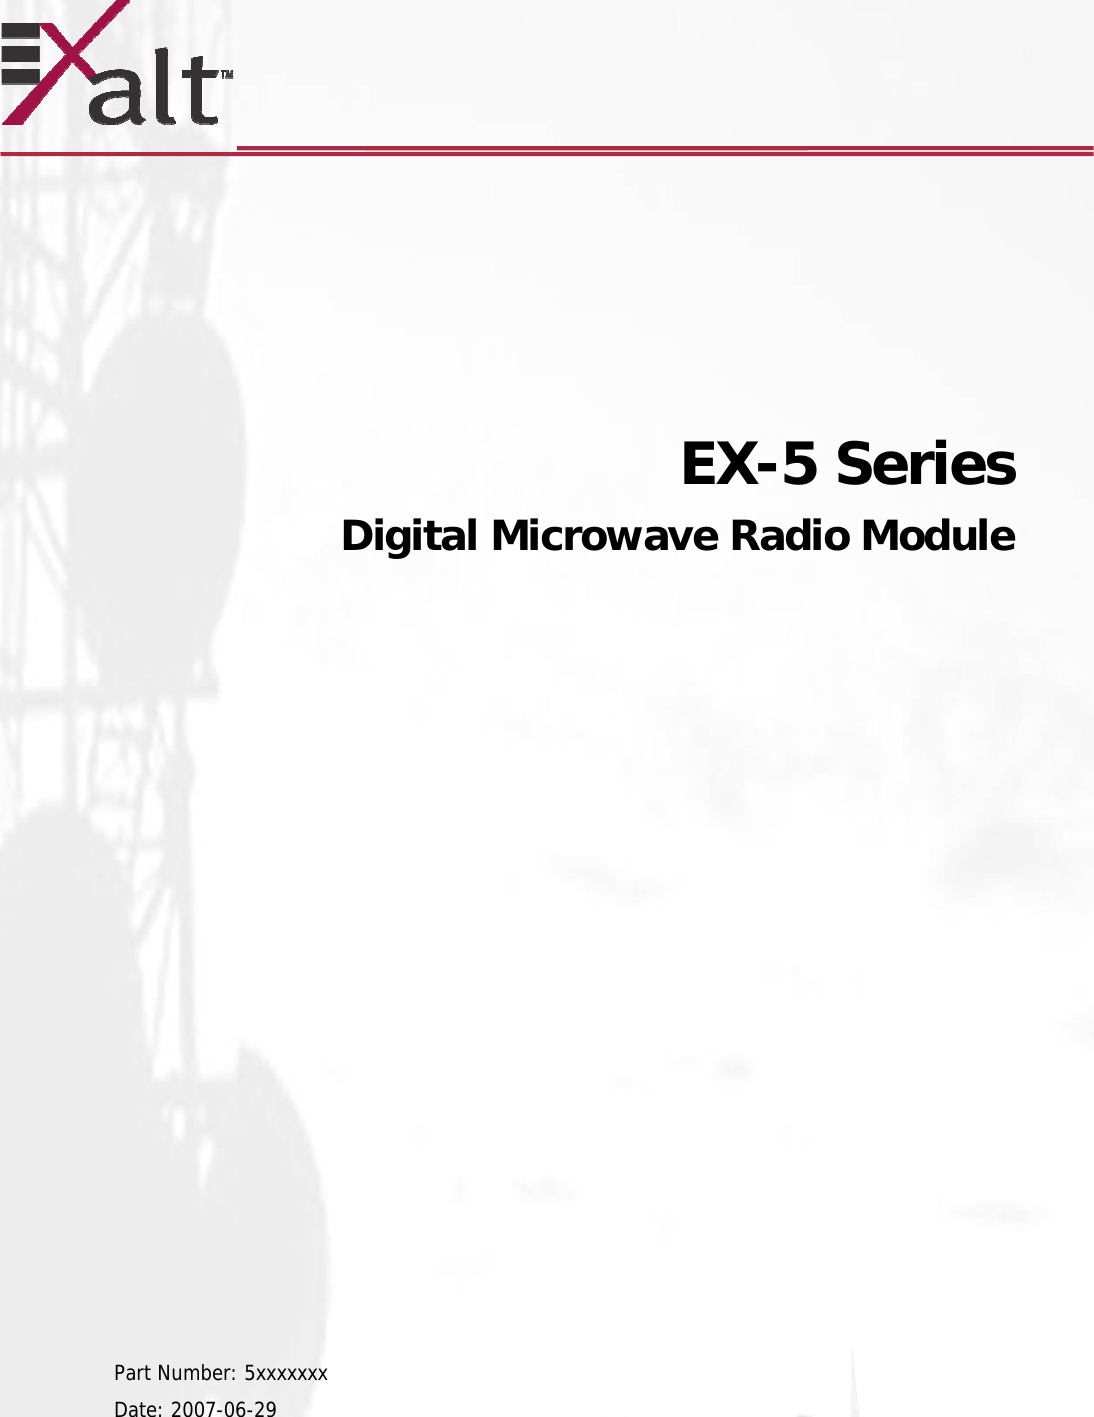            EX-5 Series   Digital Microwave Radio Module                     Part Number: 5xxxxxxx Date: 2007-06-29  